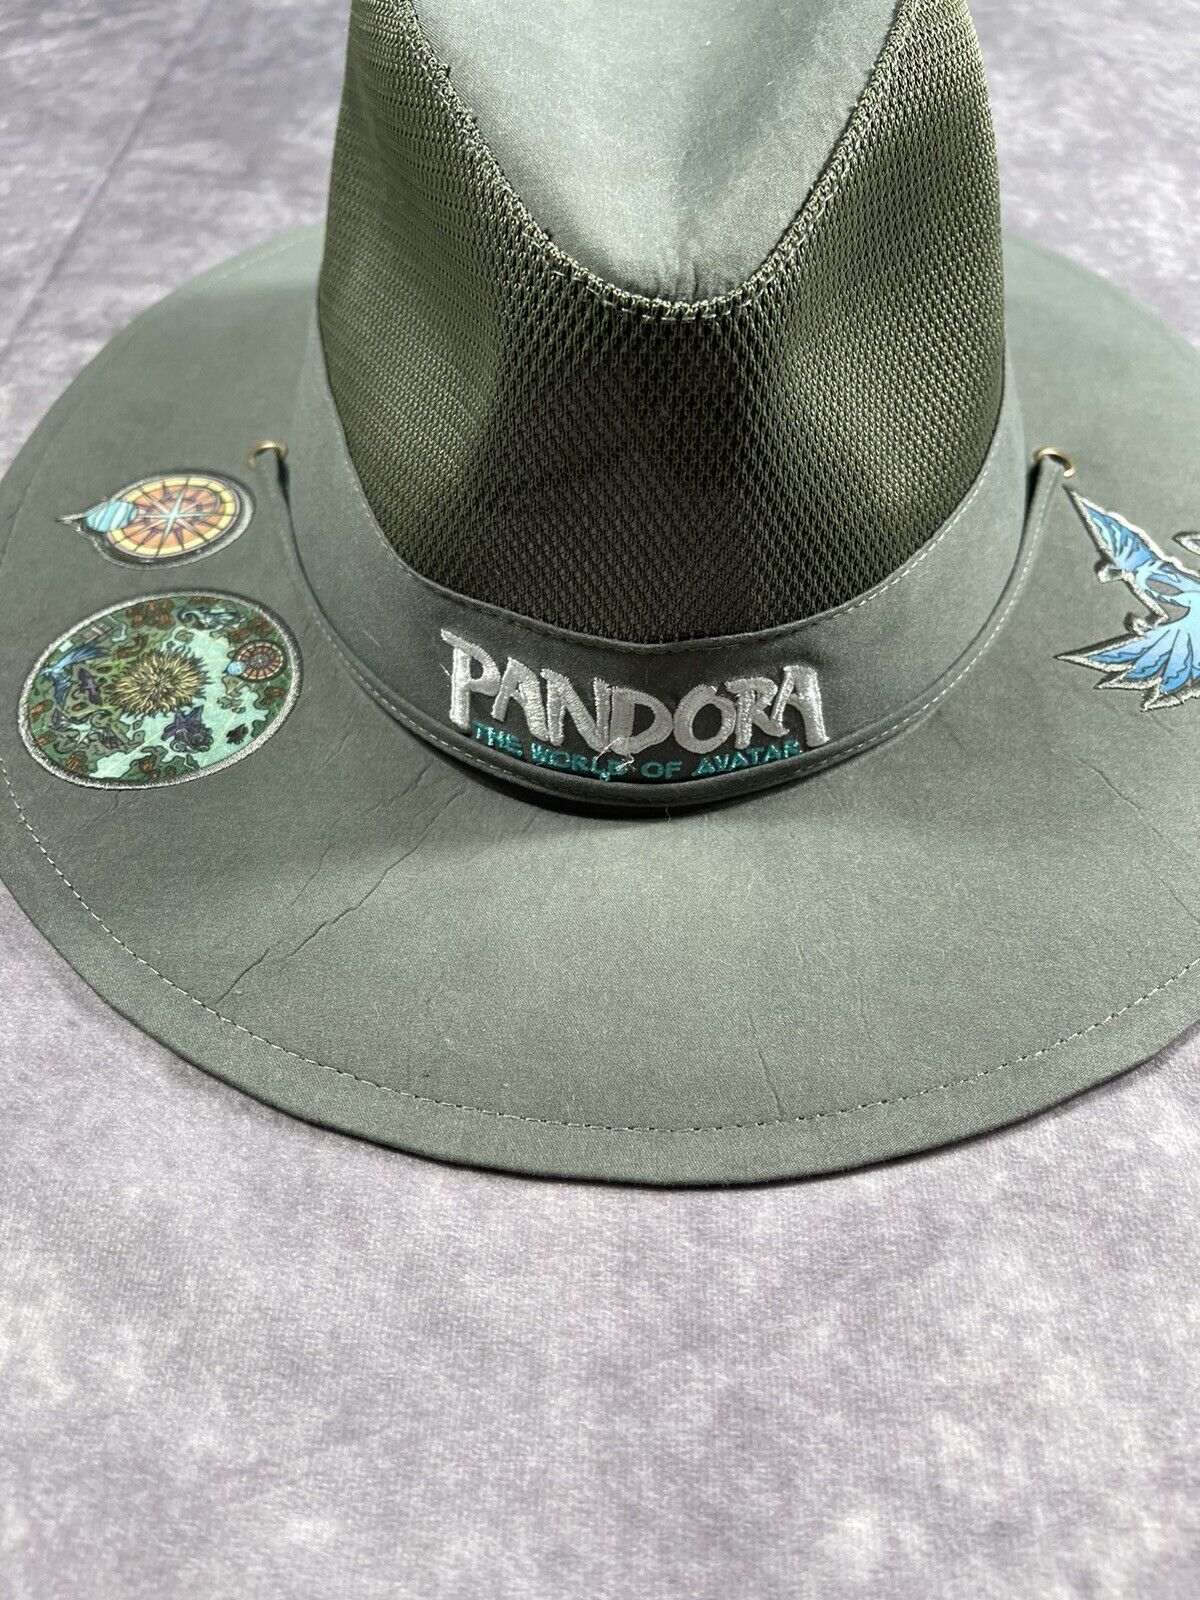 Pandora Safari Hat Avatar Animal Kingdom Disney